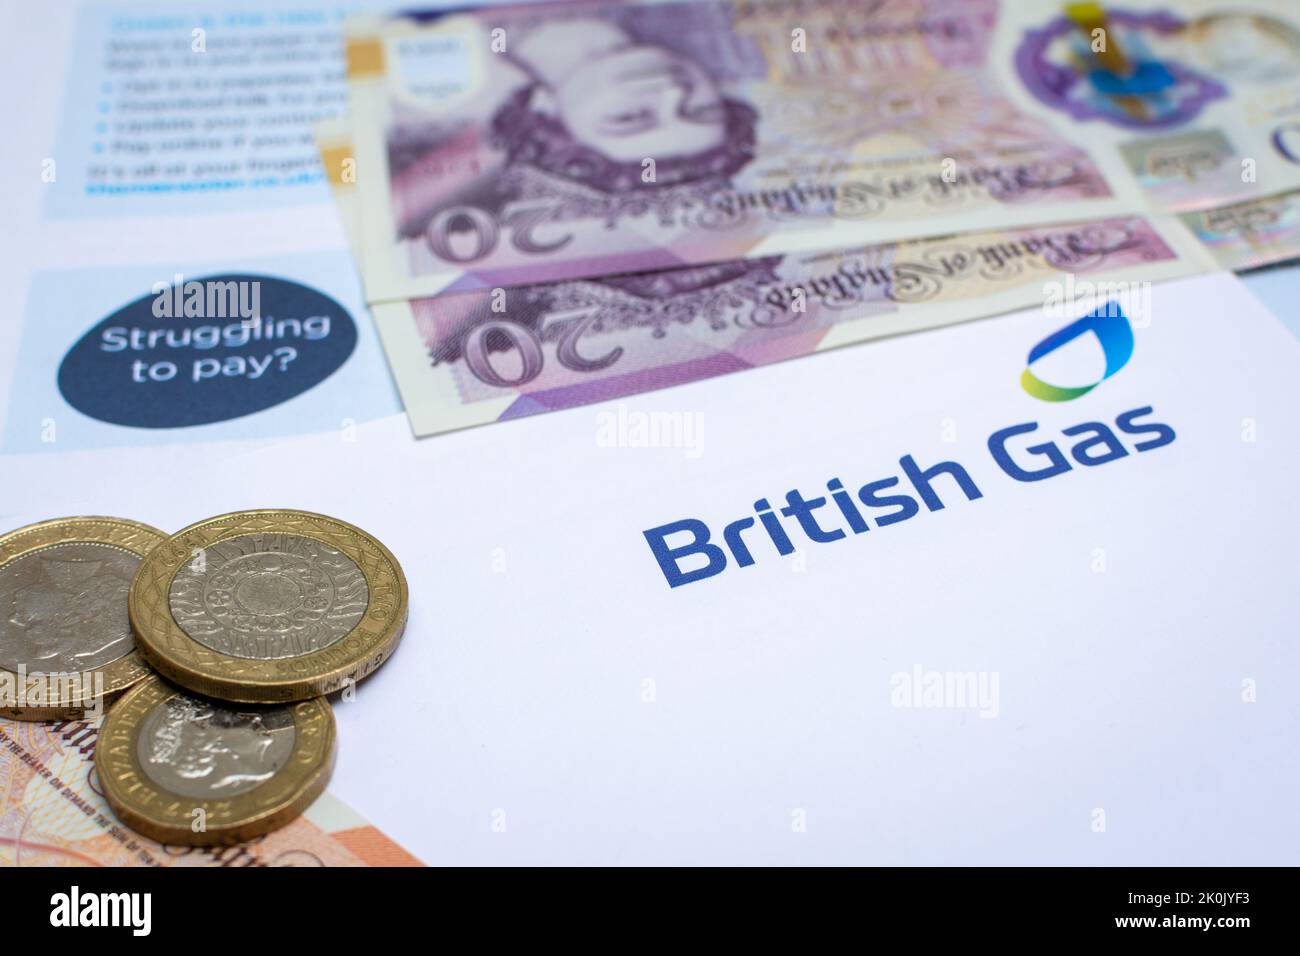 Una fattura britannica del gas con la valuta del Regno Unito. Il costo della vita e l'inflazione con prezzi in aumento stanno colpendo molte persone. Foto Stock